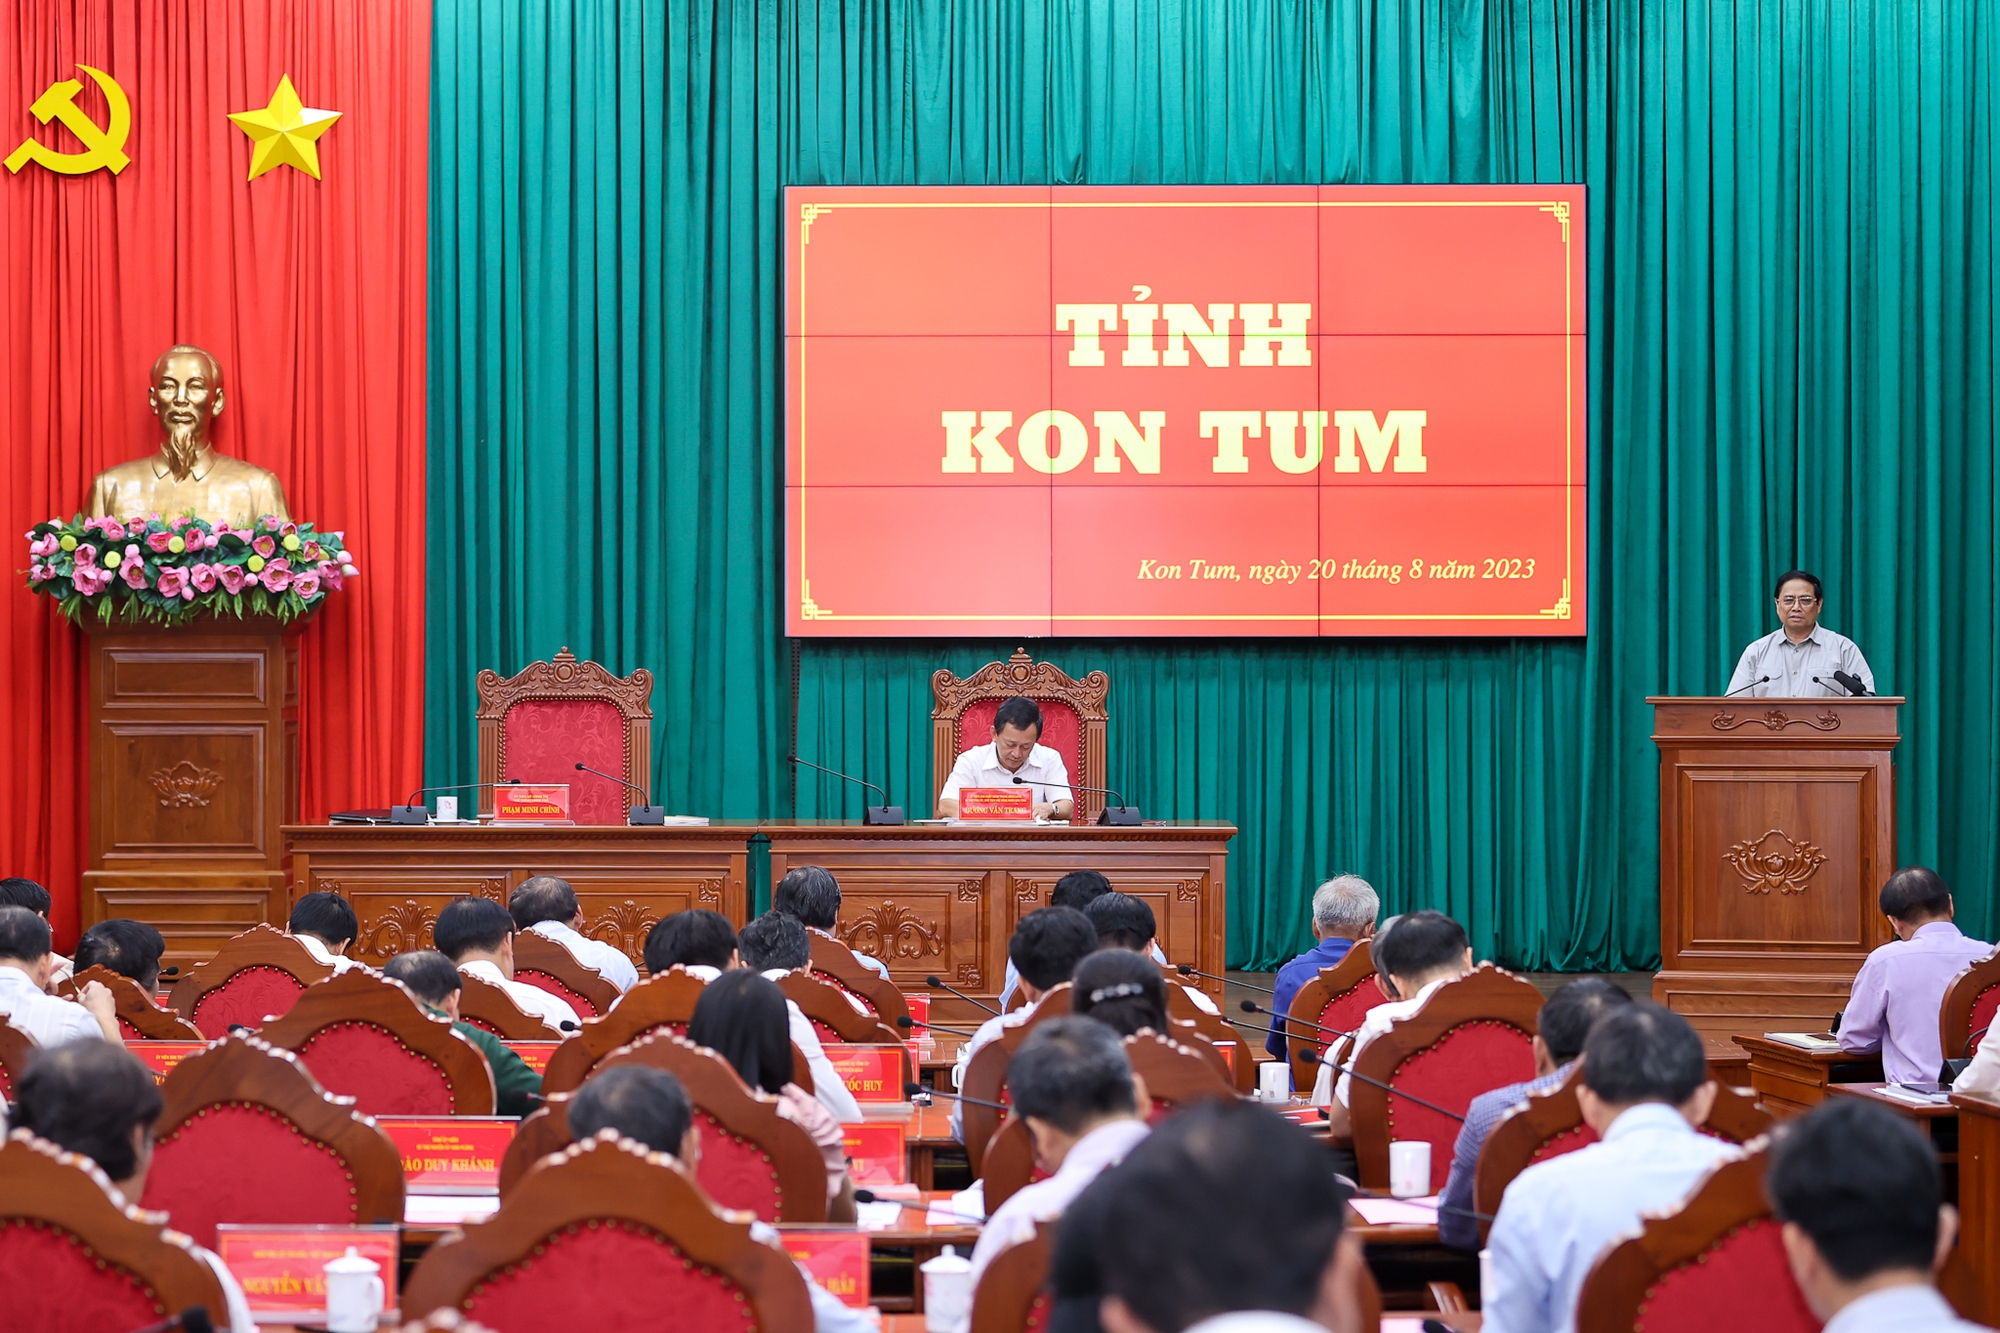 Thủ tướng khẳng định, Kon Tum còn nhiều lợi thế, tiềm năng chưa được phát huy hết - Ảnh: VGP/Nhật Bắc